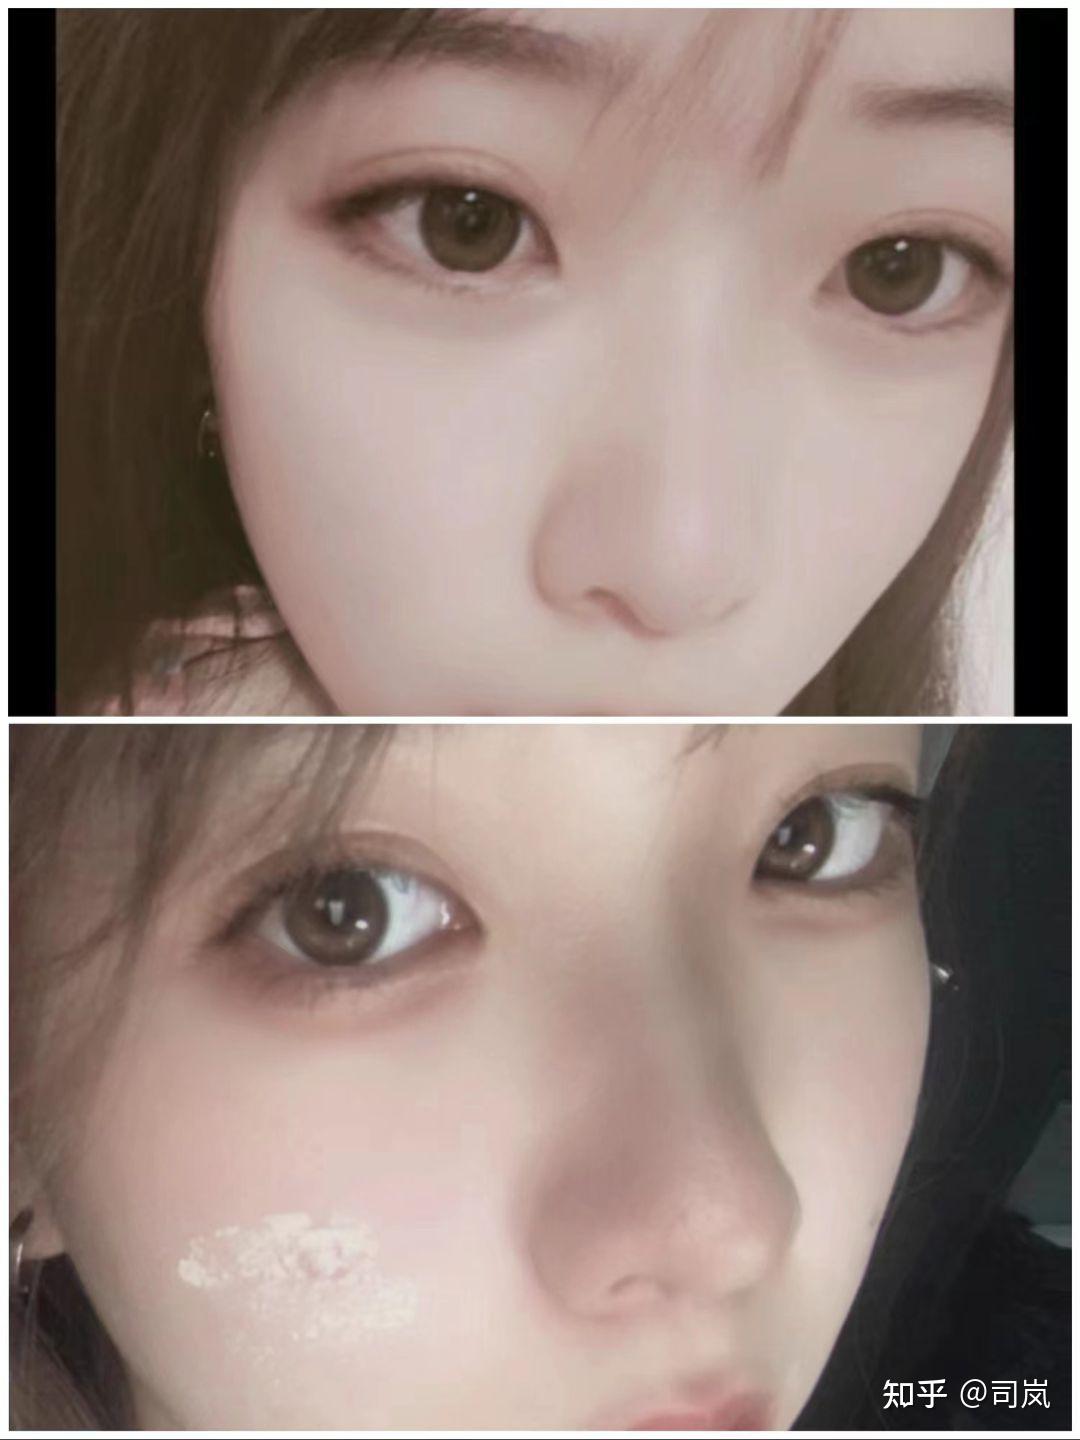 性感撩发高鼻子的韩国美女高清手机壁纸-美女-3g壁纸